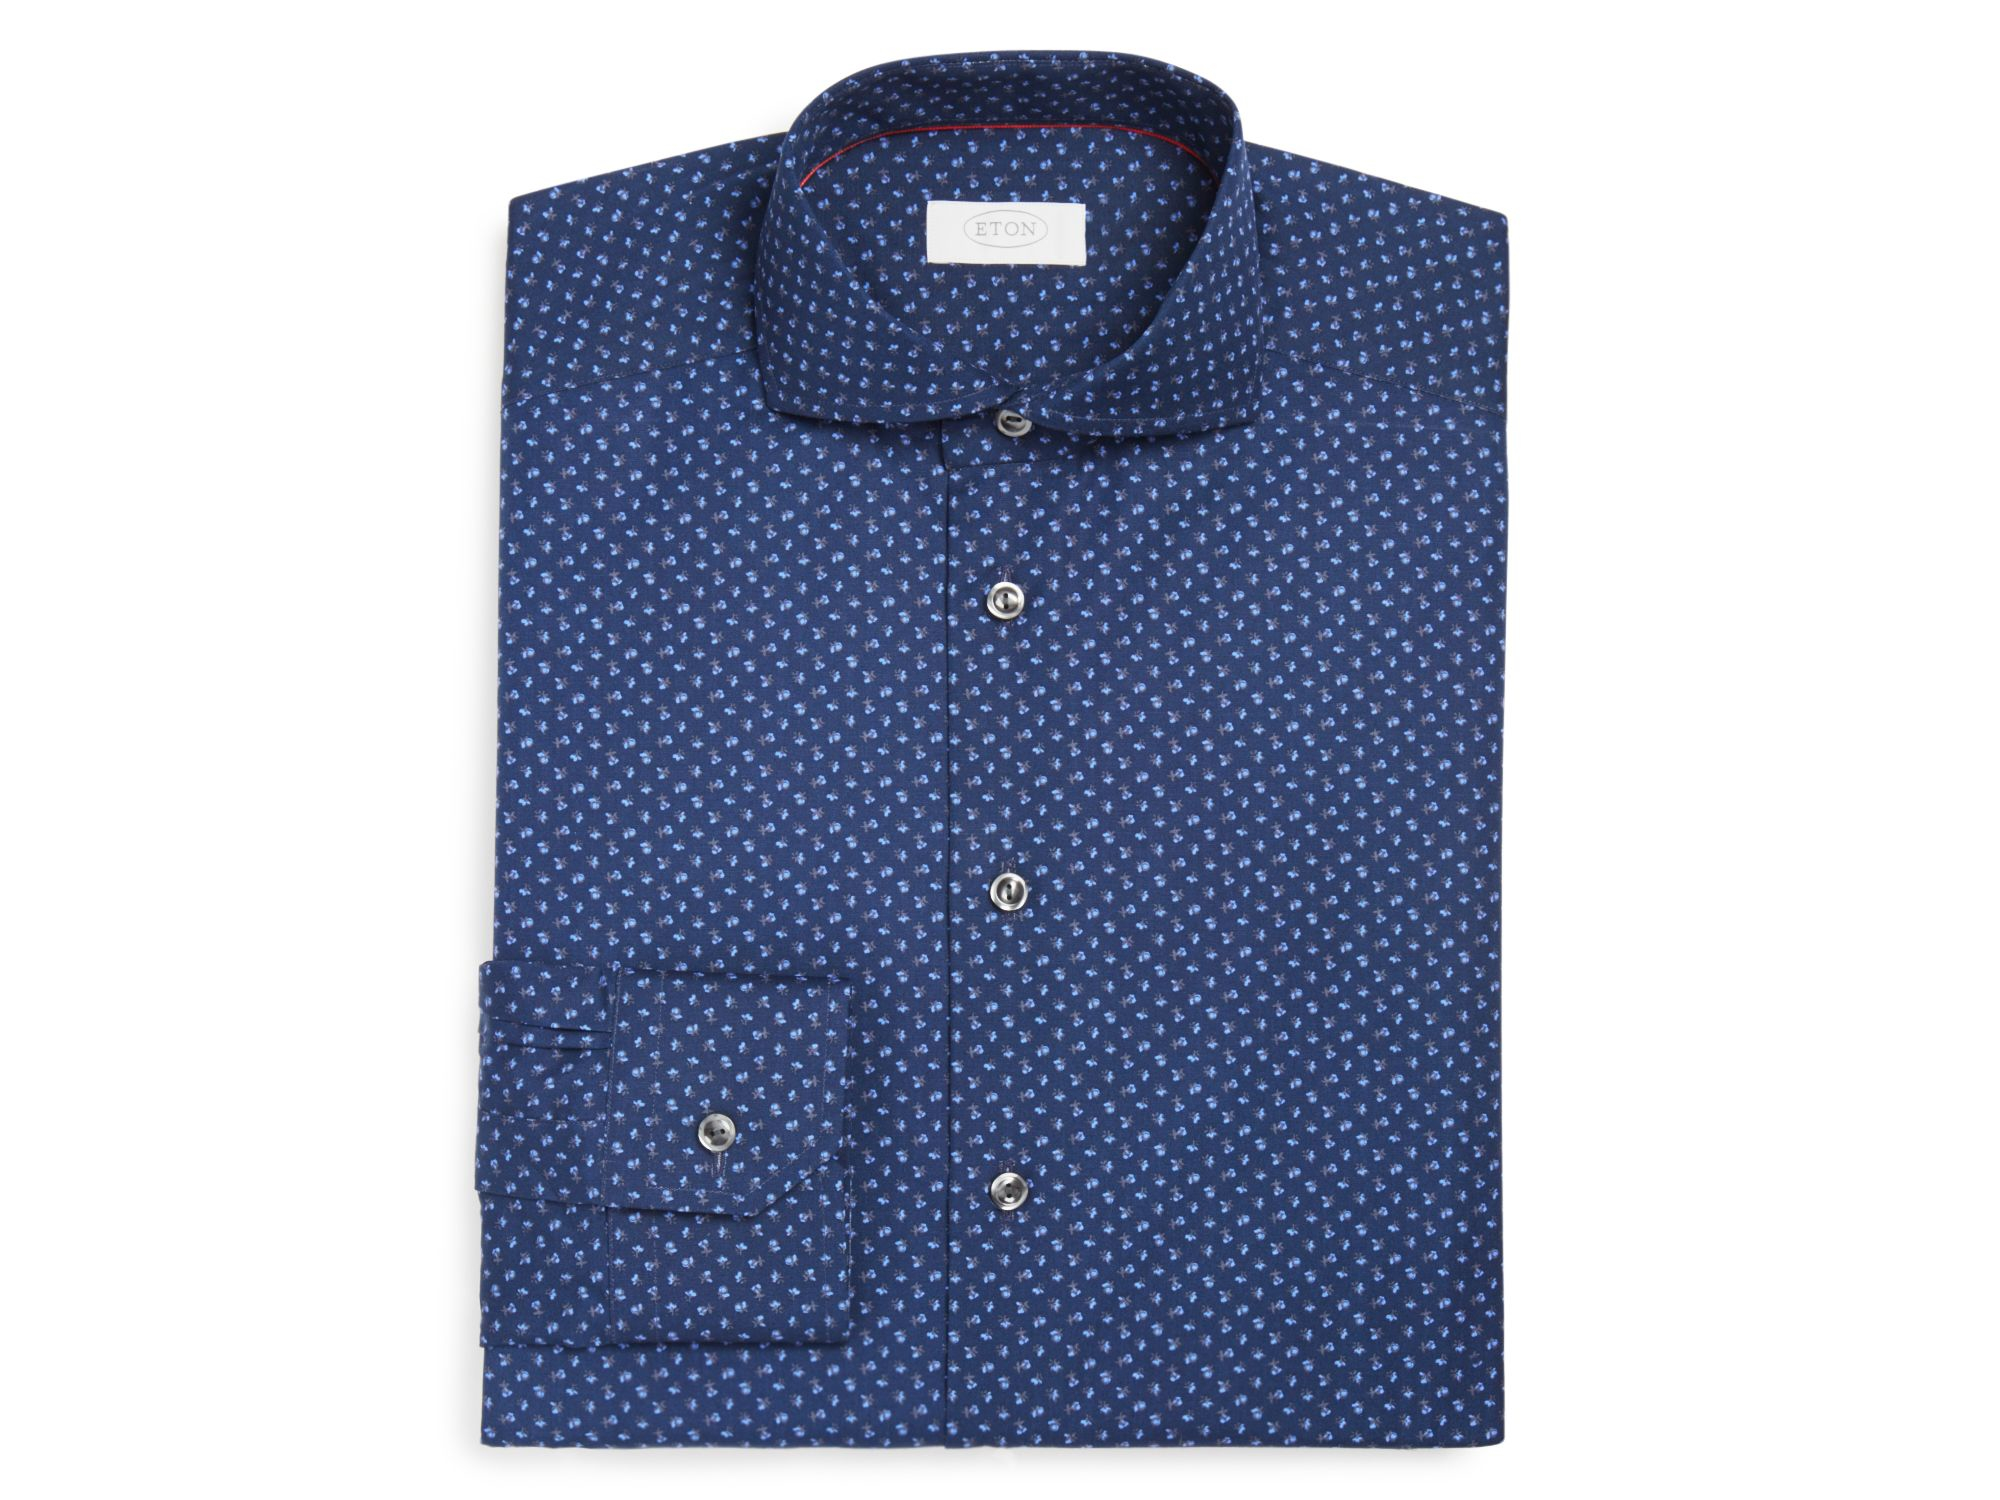 Lyst - Eton of sweden Flower Micro Print Slim Fit Dress Shirt in Blue for Men